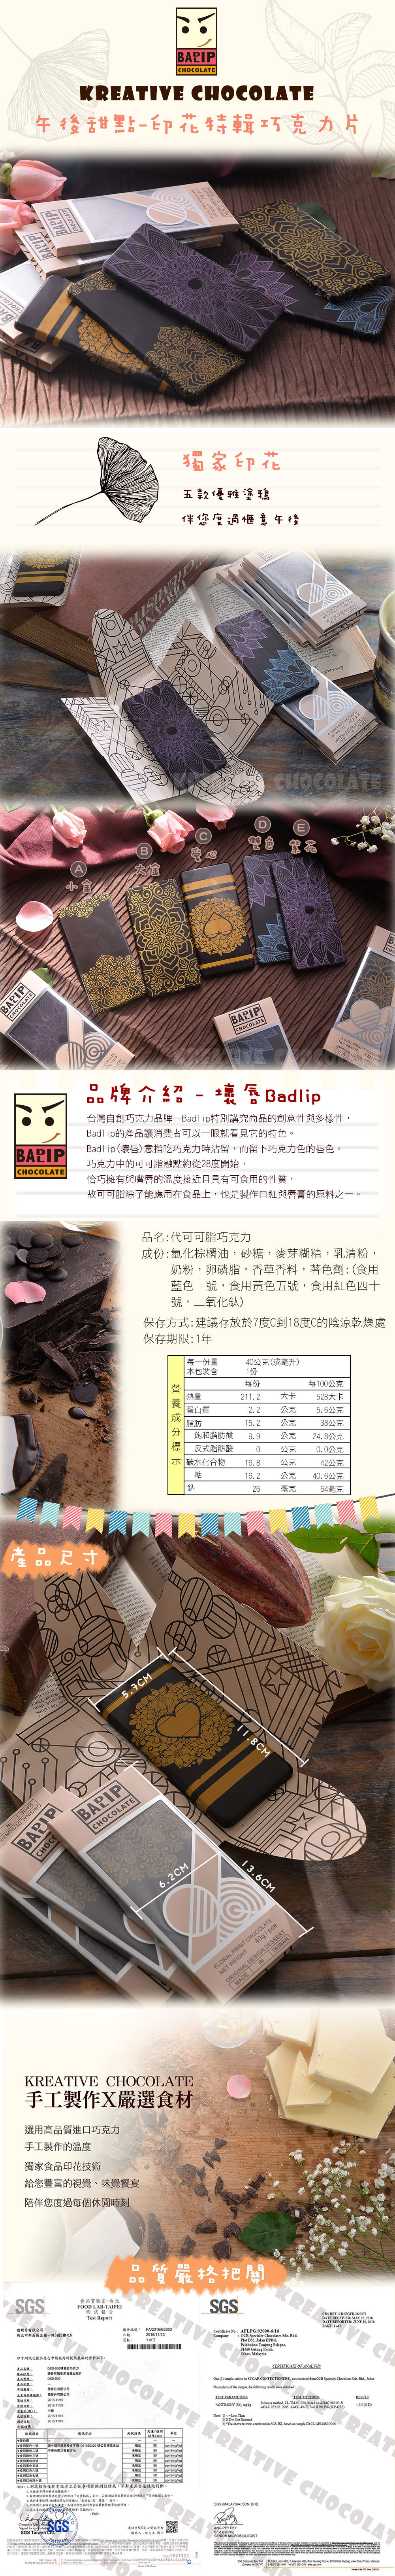 壞唇 Badlip 彩繪圖騰巧克力 (40g/片)｜Kreative Chocolate創意巧克力